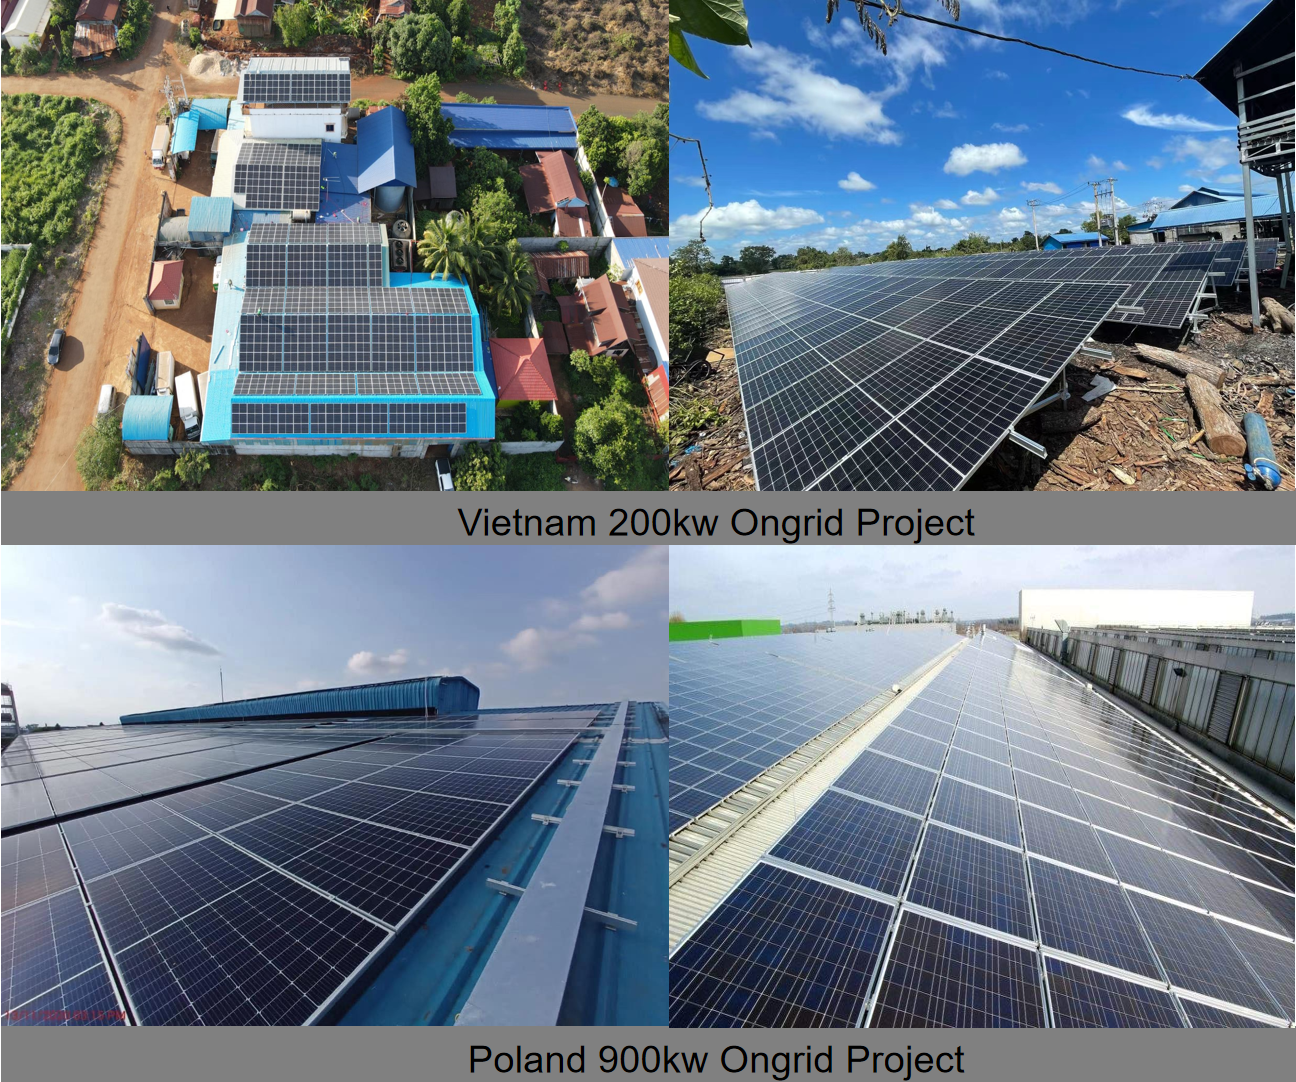  LVTOPSUN High Efficiency 435w Solar Panel Photovoltaic Module Mono Cell 